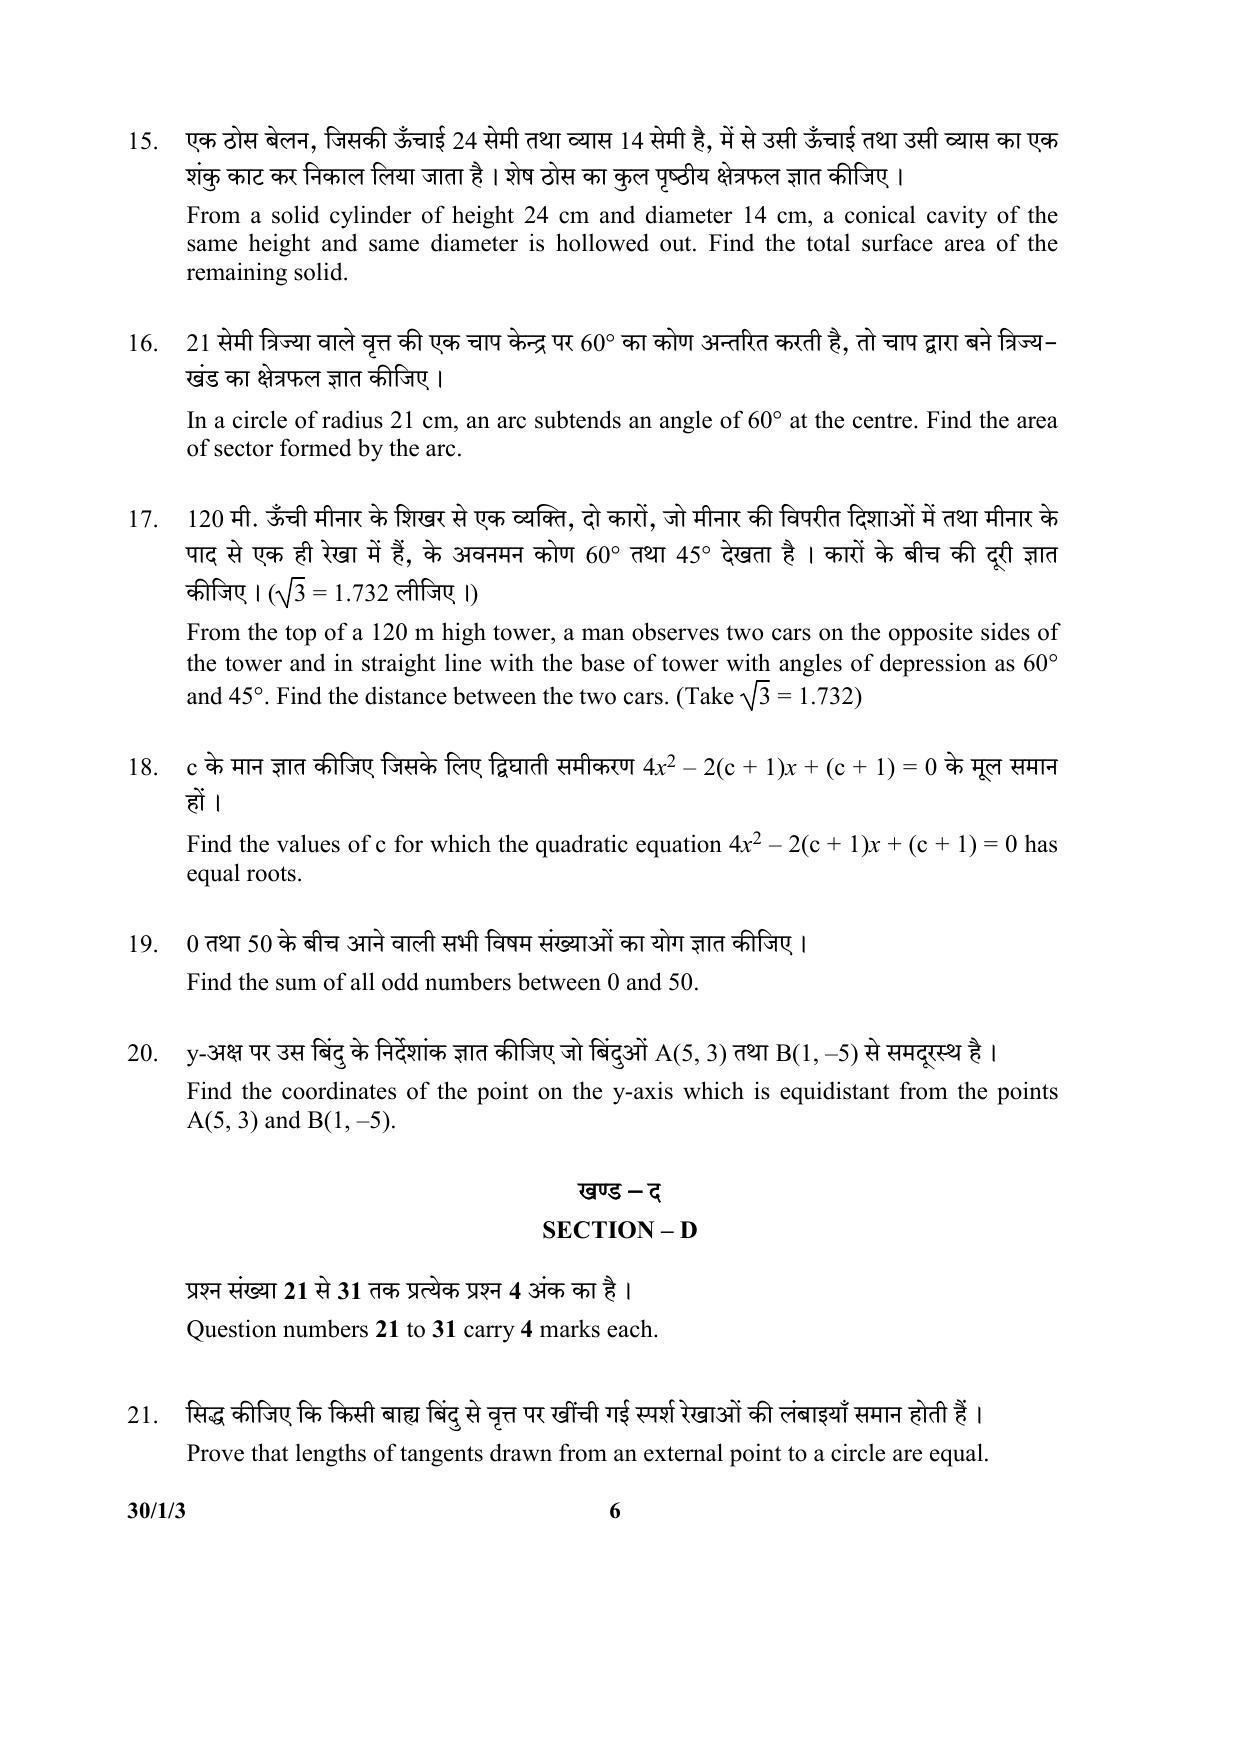 CBSE Class 10 30-1-3 (Mathematics) 2017-comptt Question Paper - Page 6